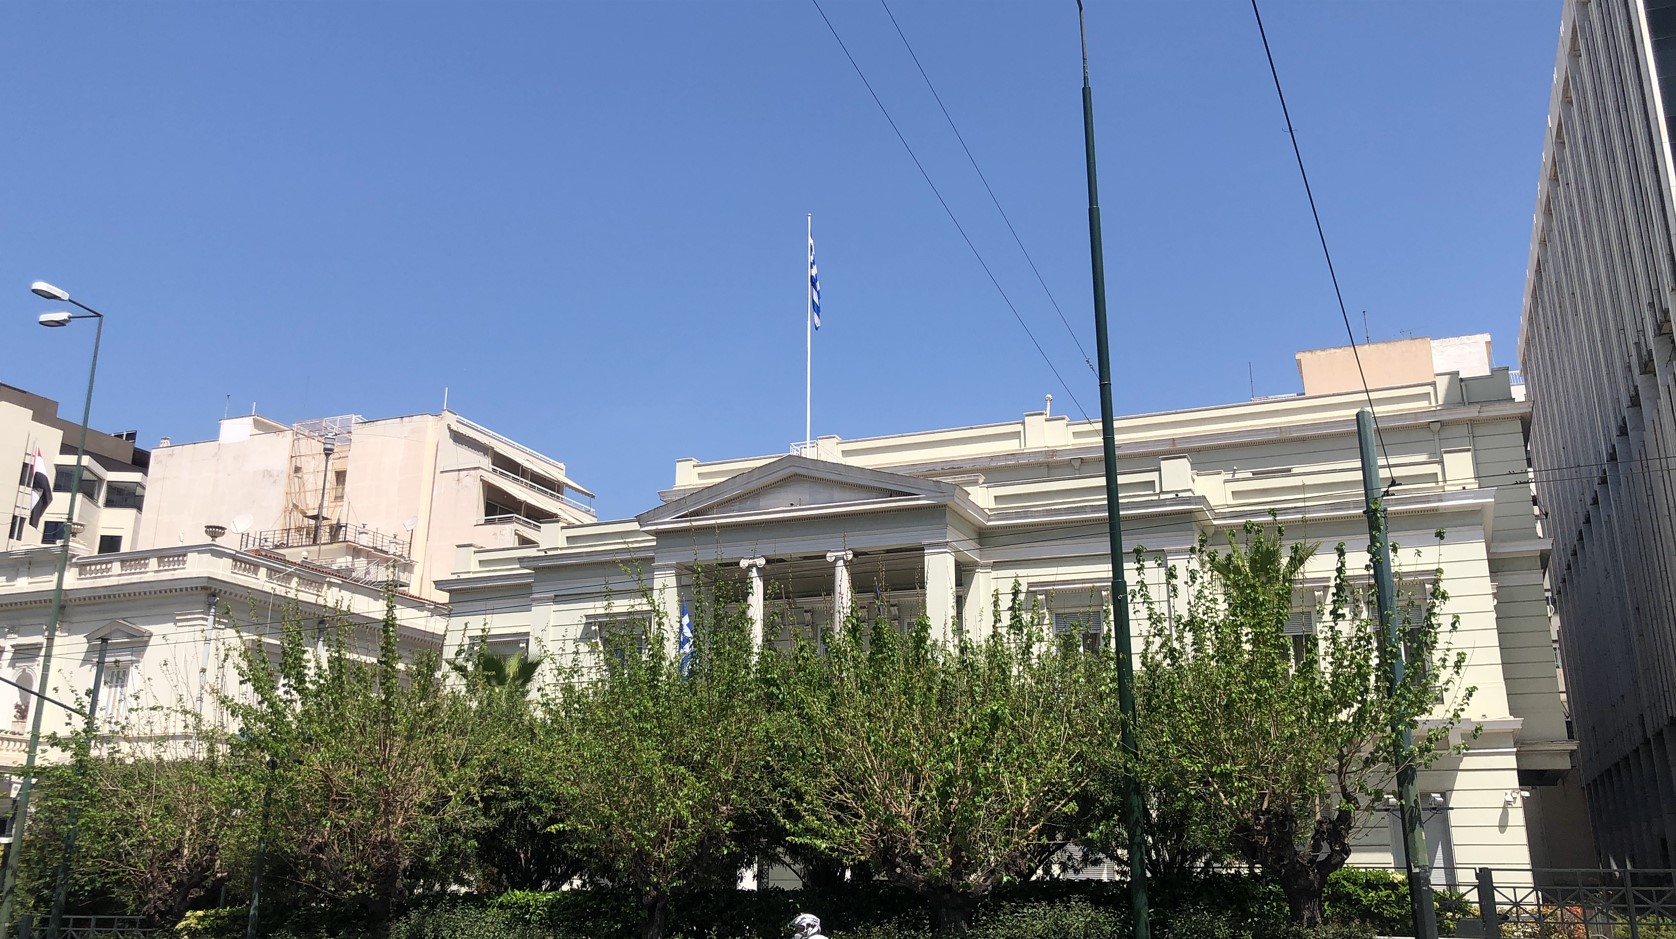 Μεγάλη Παρασκευή, 30 Απριλίου 2021 - Πανδημία COVID-19. Οι Έλληνες φυλακισμένοι μέσα στα σπίτια τους, δεν επιτρέπεται ούτε περιφορά του Επιταφίου να κάνουν. Η κυβέρνηση Μητσοτάκη «παραλείπει» να επαίρει την ελληνική σημαία μεσίστια. Γι' αυτήν είναι απλά... Παρασκευή. Το ίδιο συμβαίνει και στο Μέγαρο του Υπουργείου Εξωτερικών, του «υπερπατριώτη» Νίκου Δένδια.